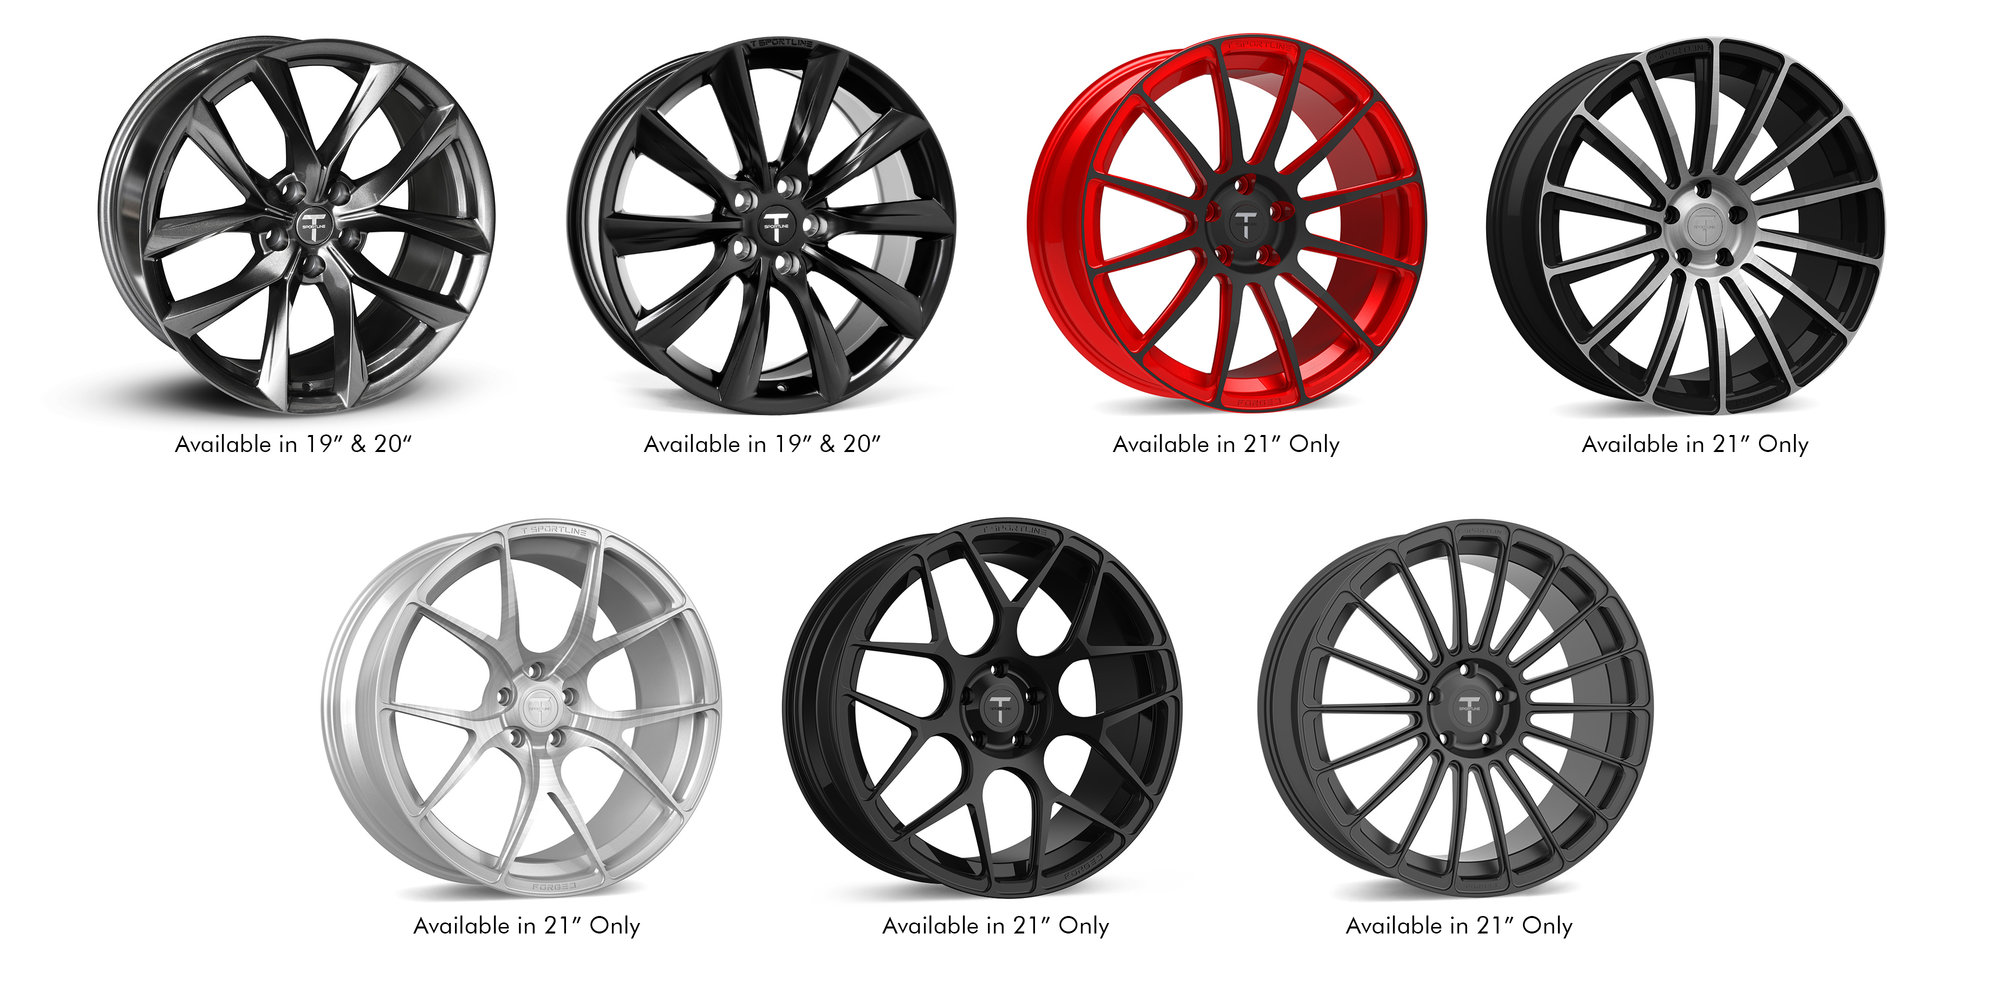 tesla-model-s-aftermarket-wheels-flow-forged-wheels-one-sheet.jpg